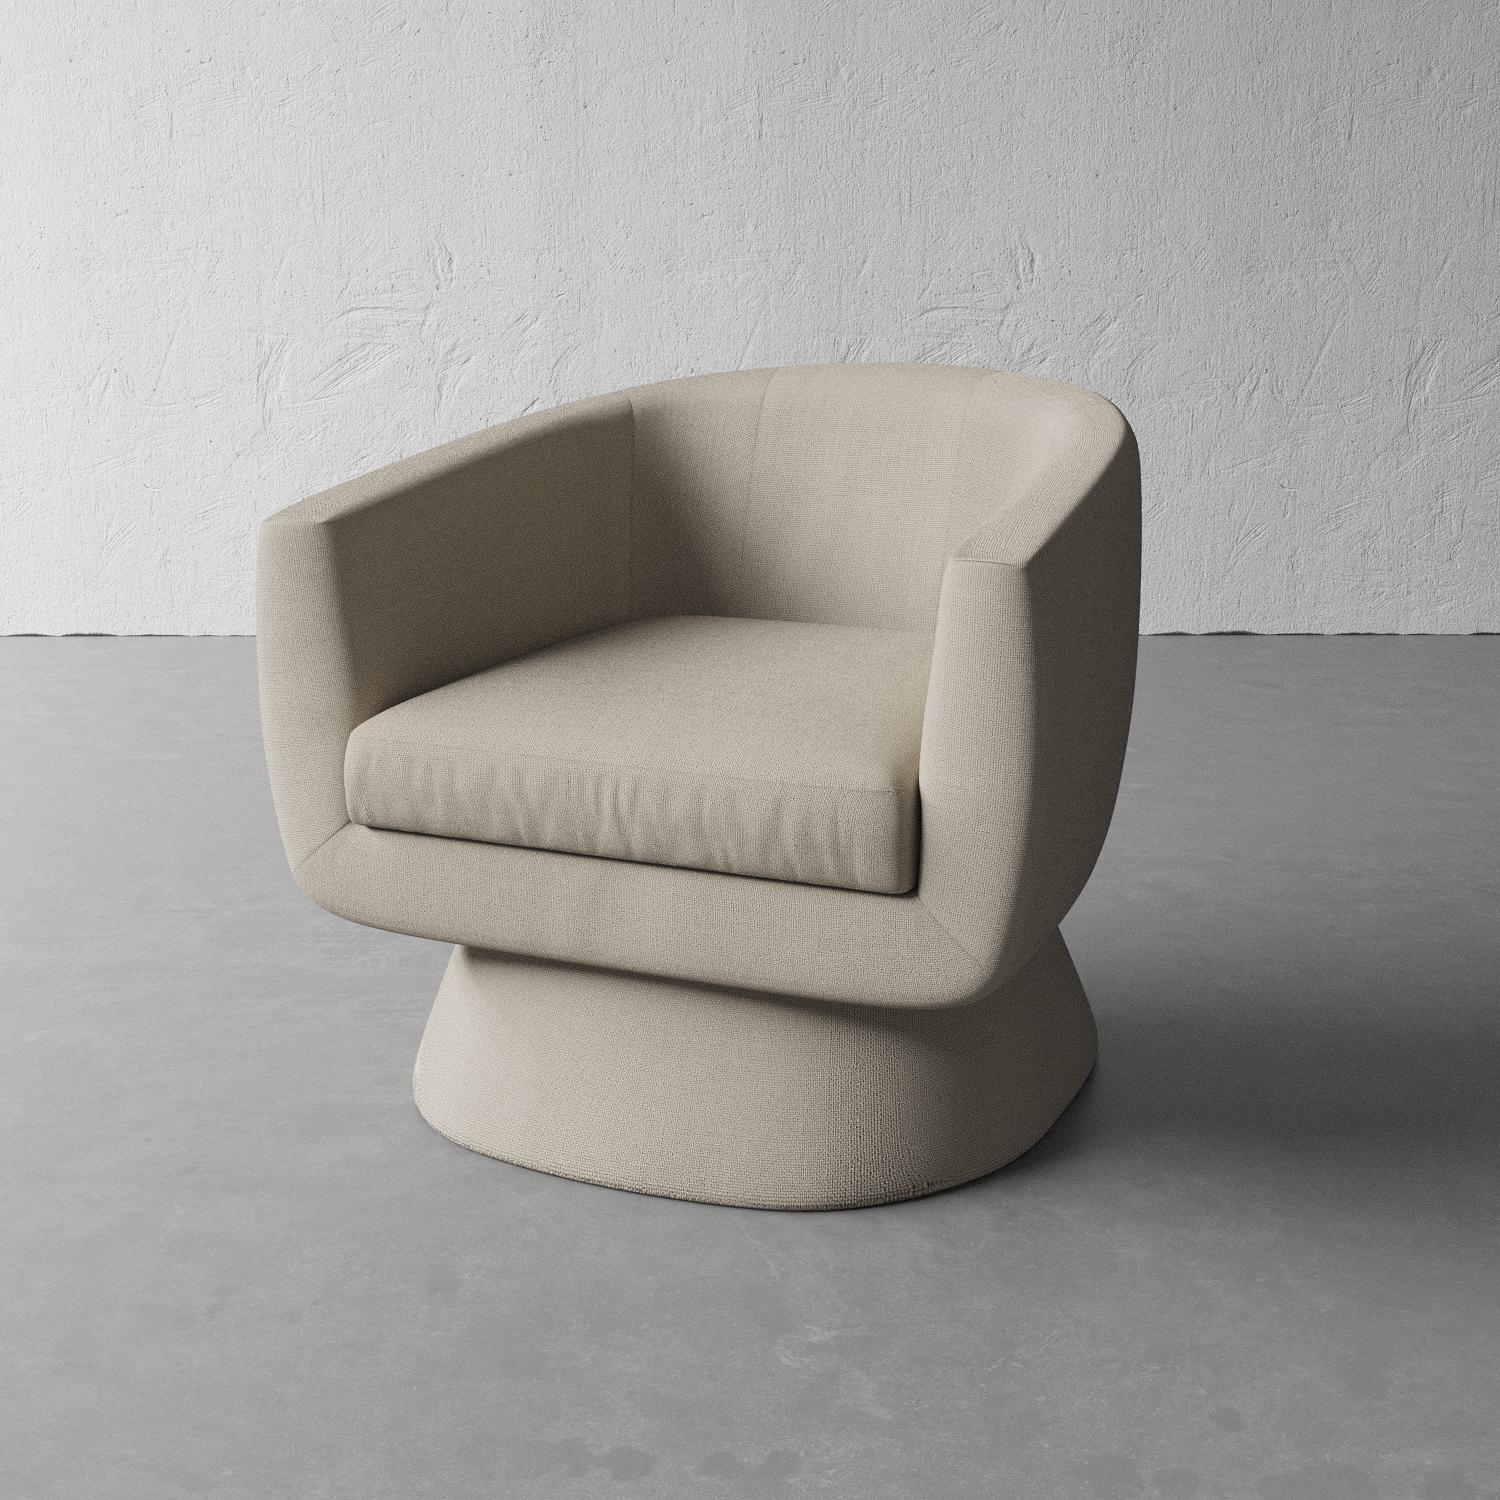 Dieser skulpturale, gepolsterte Stuhl hat eine moderne, schalenförmige Sitzfläche, die auf einem Sockel ruht. Erhältlich in einer Vielzahl von maßgeschneiderten Stoffen.

Der Versand erfolgt in etwa 5-6 Wochen. Die Auflistung zeigt einen Stuhl, der